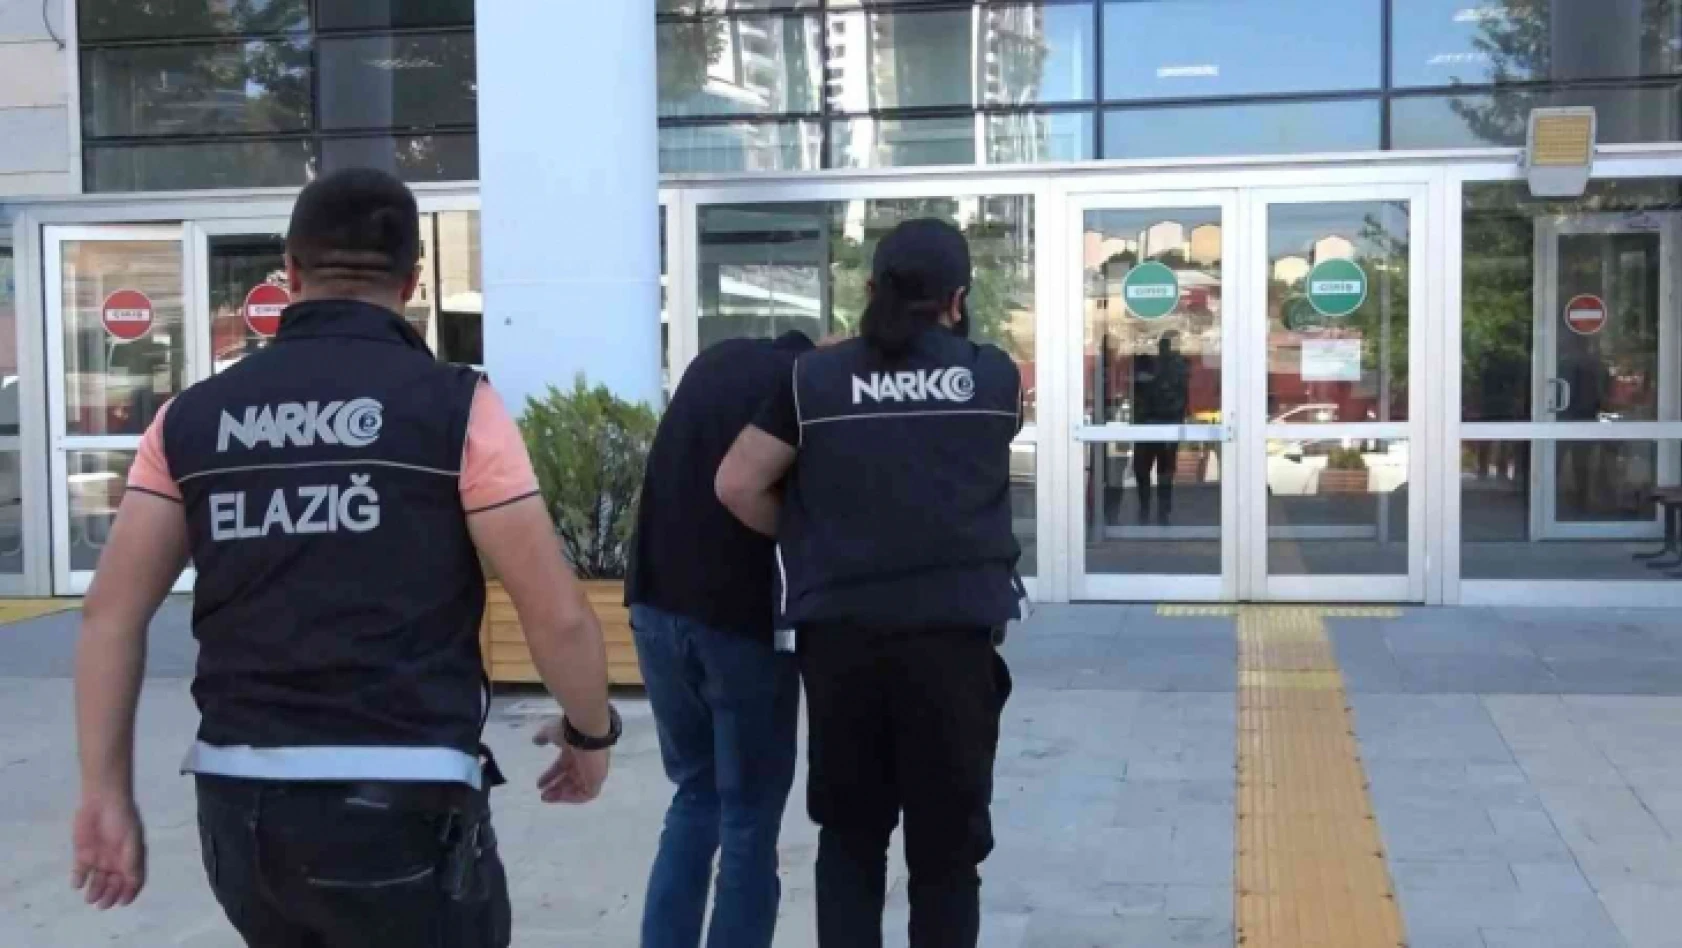 Elazığ'da uyuşturucu madde satan şüpheli yakalandı